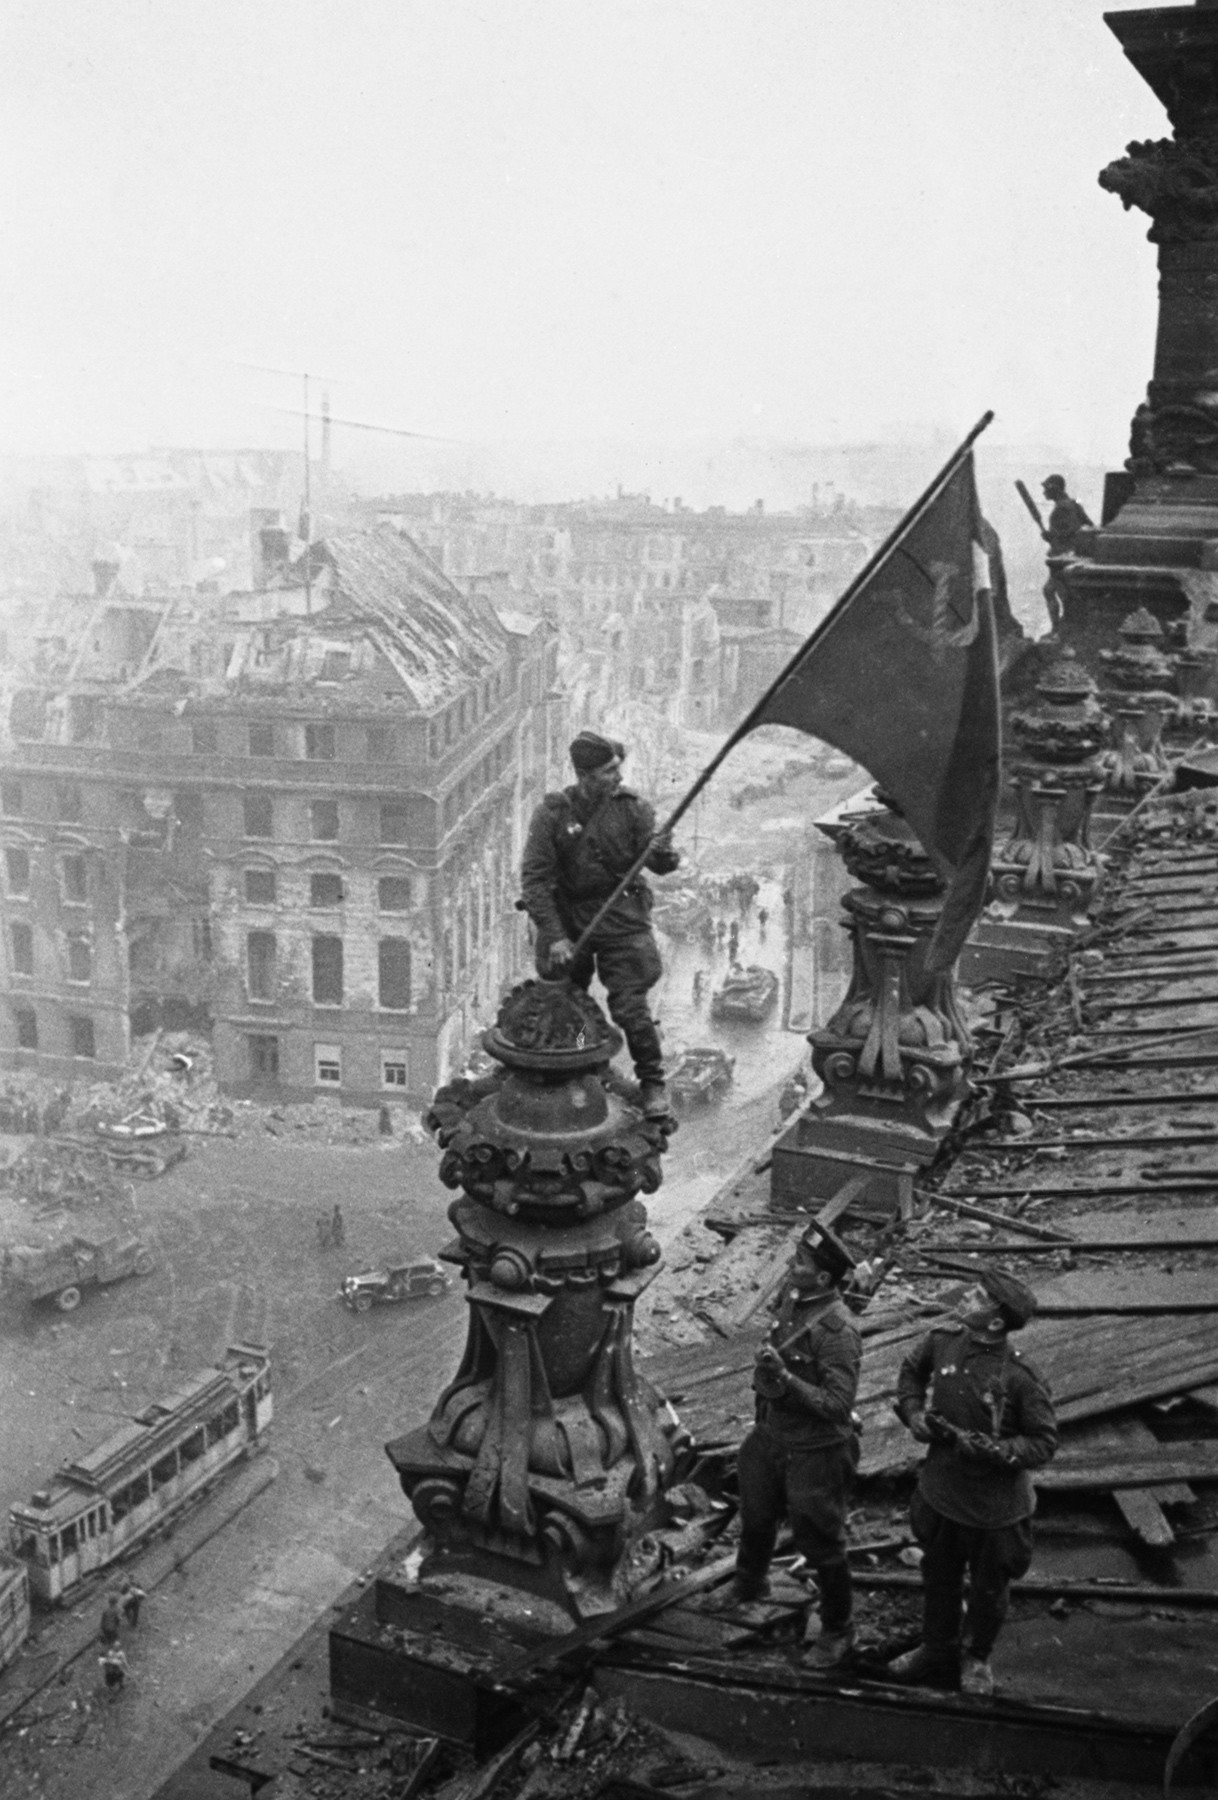 Njemačka, Berlin, 2. svibnja 1945. Borci 8. gardijske armije Aleksej Kovaljov, Abdulhakim Ismailov i Leonid Goričev (slijeva nadesno) s crvenom zastavom na krovu zgrade Reichstaga poslije pada Berlina u ruke sovjetskih trupa tijekom Drugog svjetskog rata.